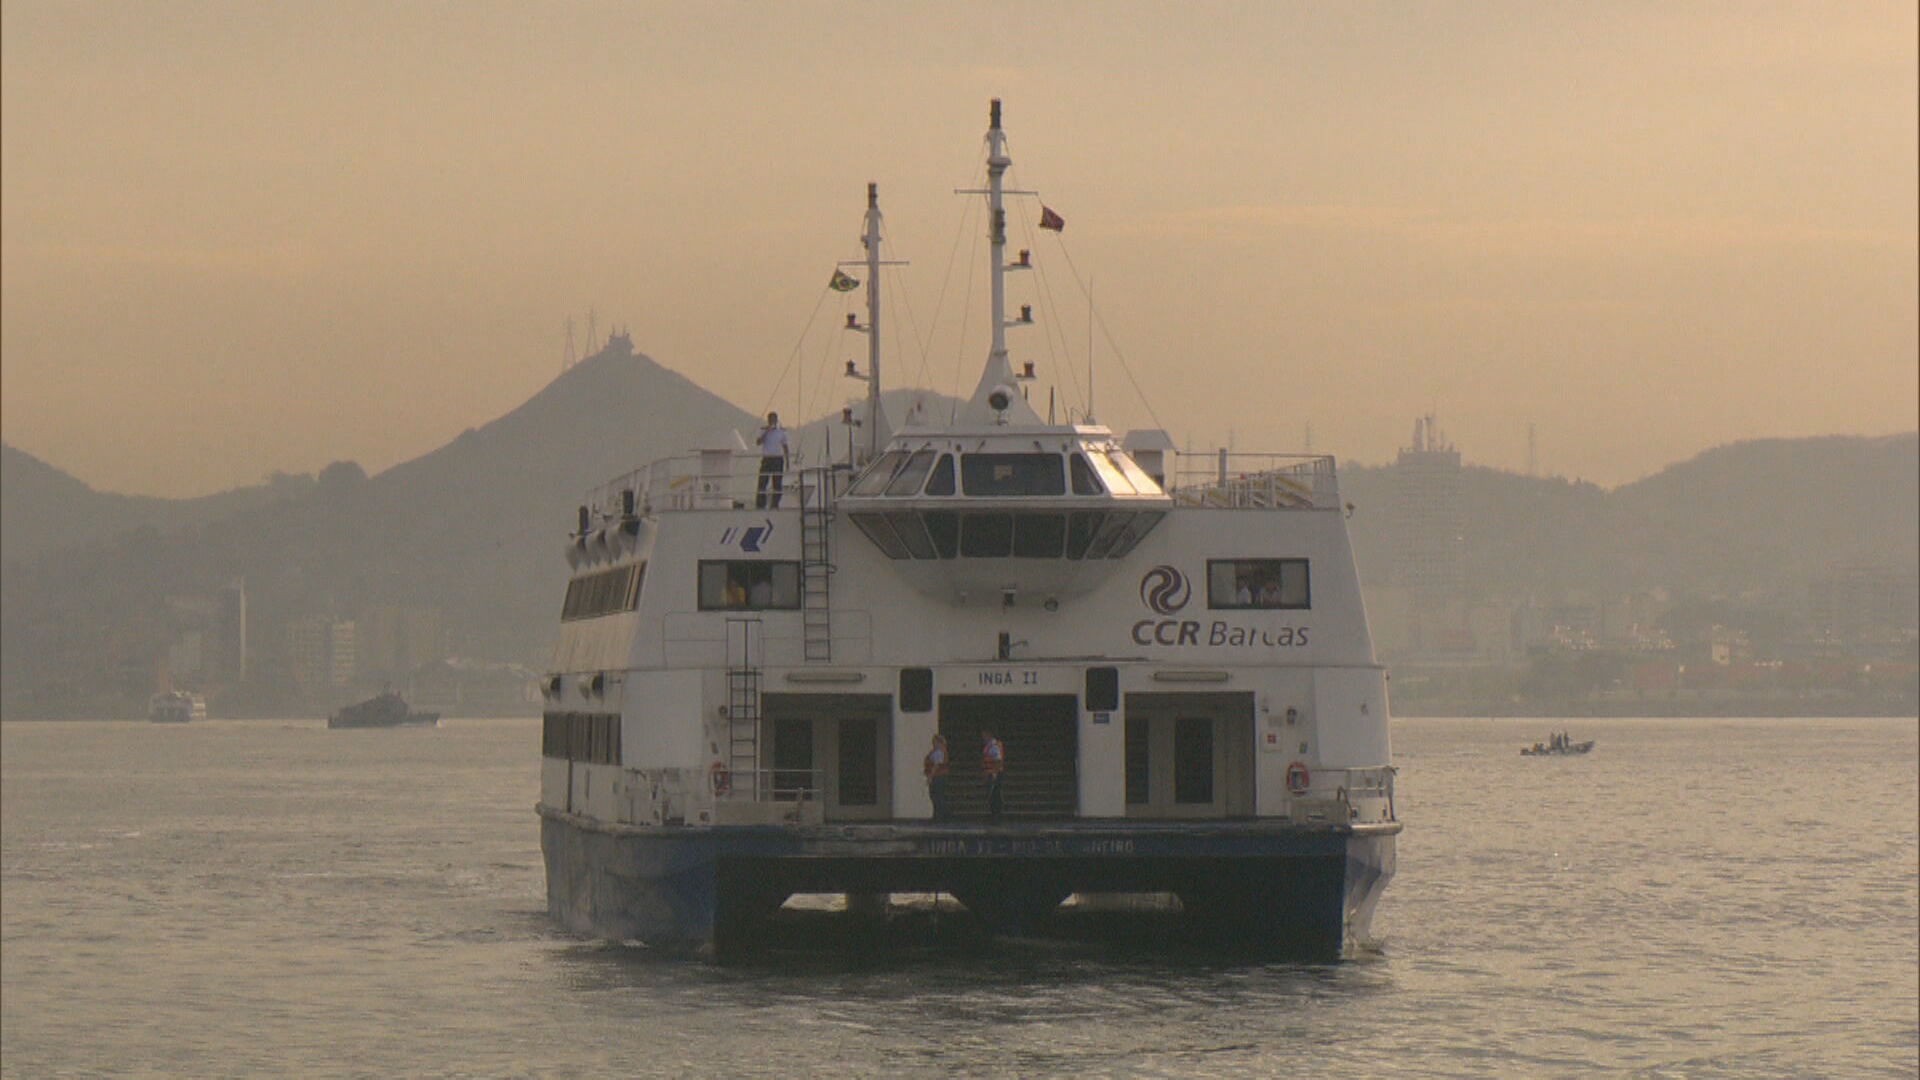 Barcas: estudo da UFRJ diz que, para viabilizar concessão, tarifa teria que ser de R$ 16,84